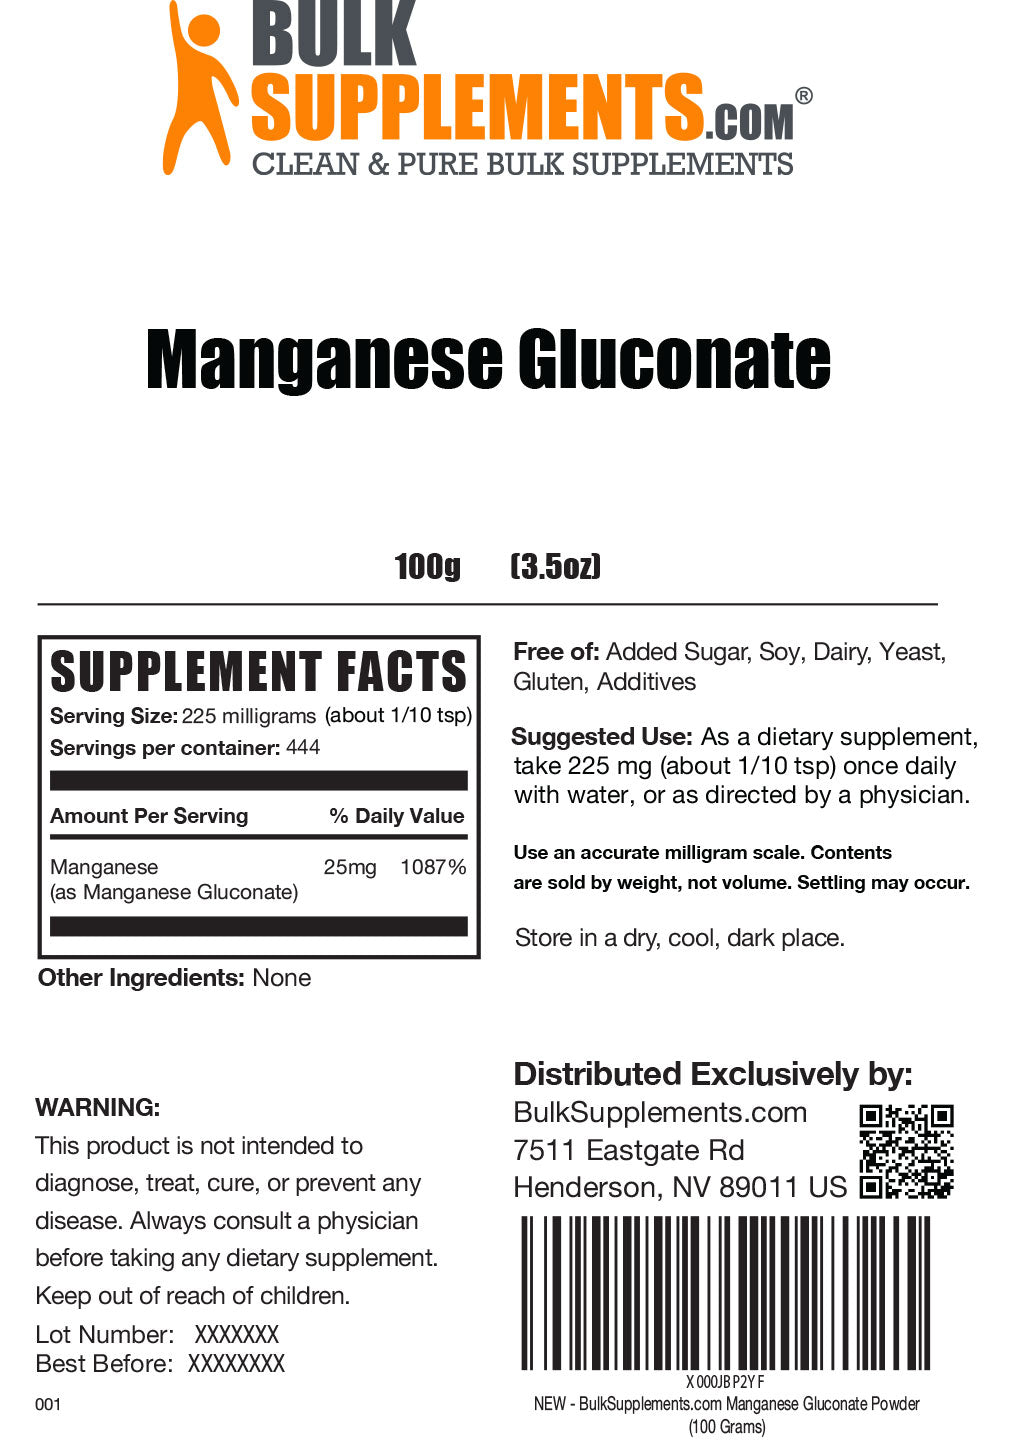 Manganese Gluconate Powder 100g Label